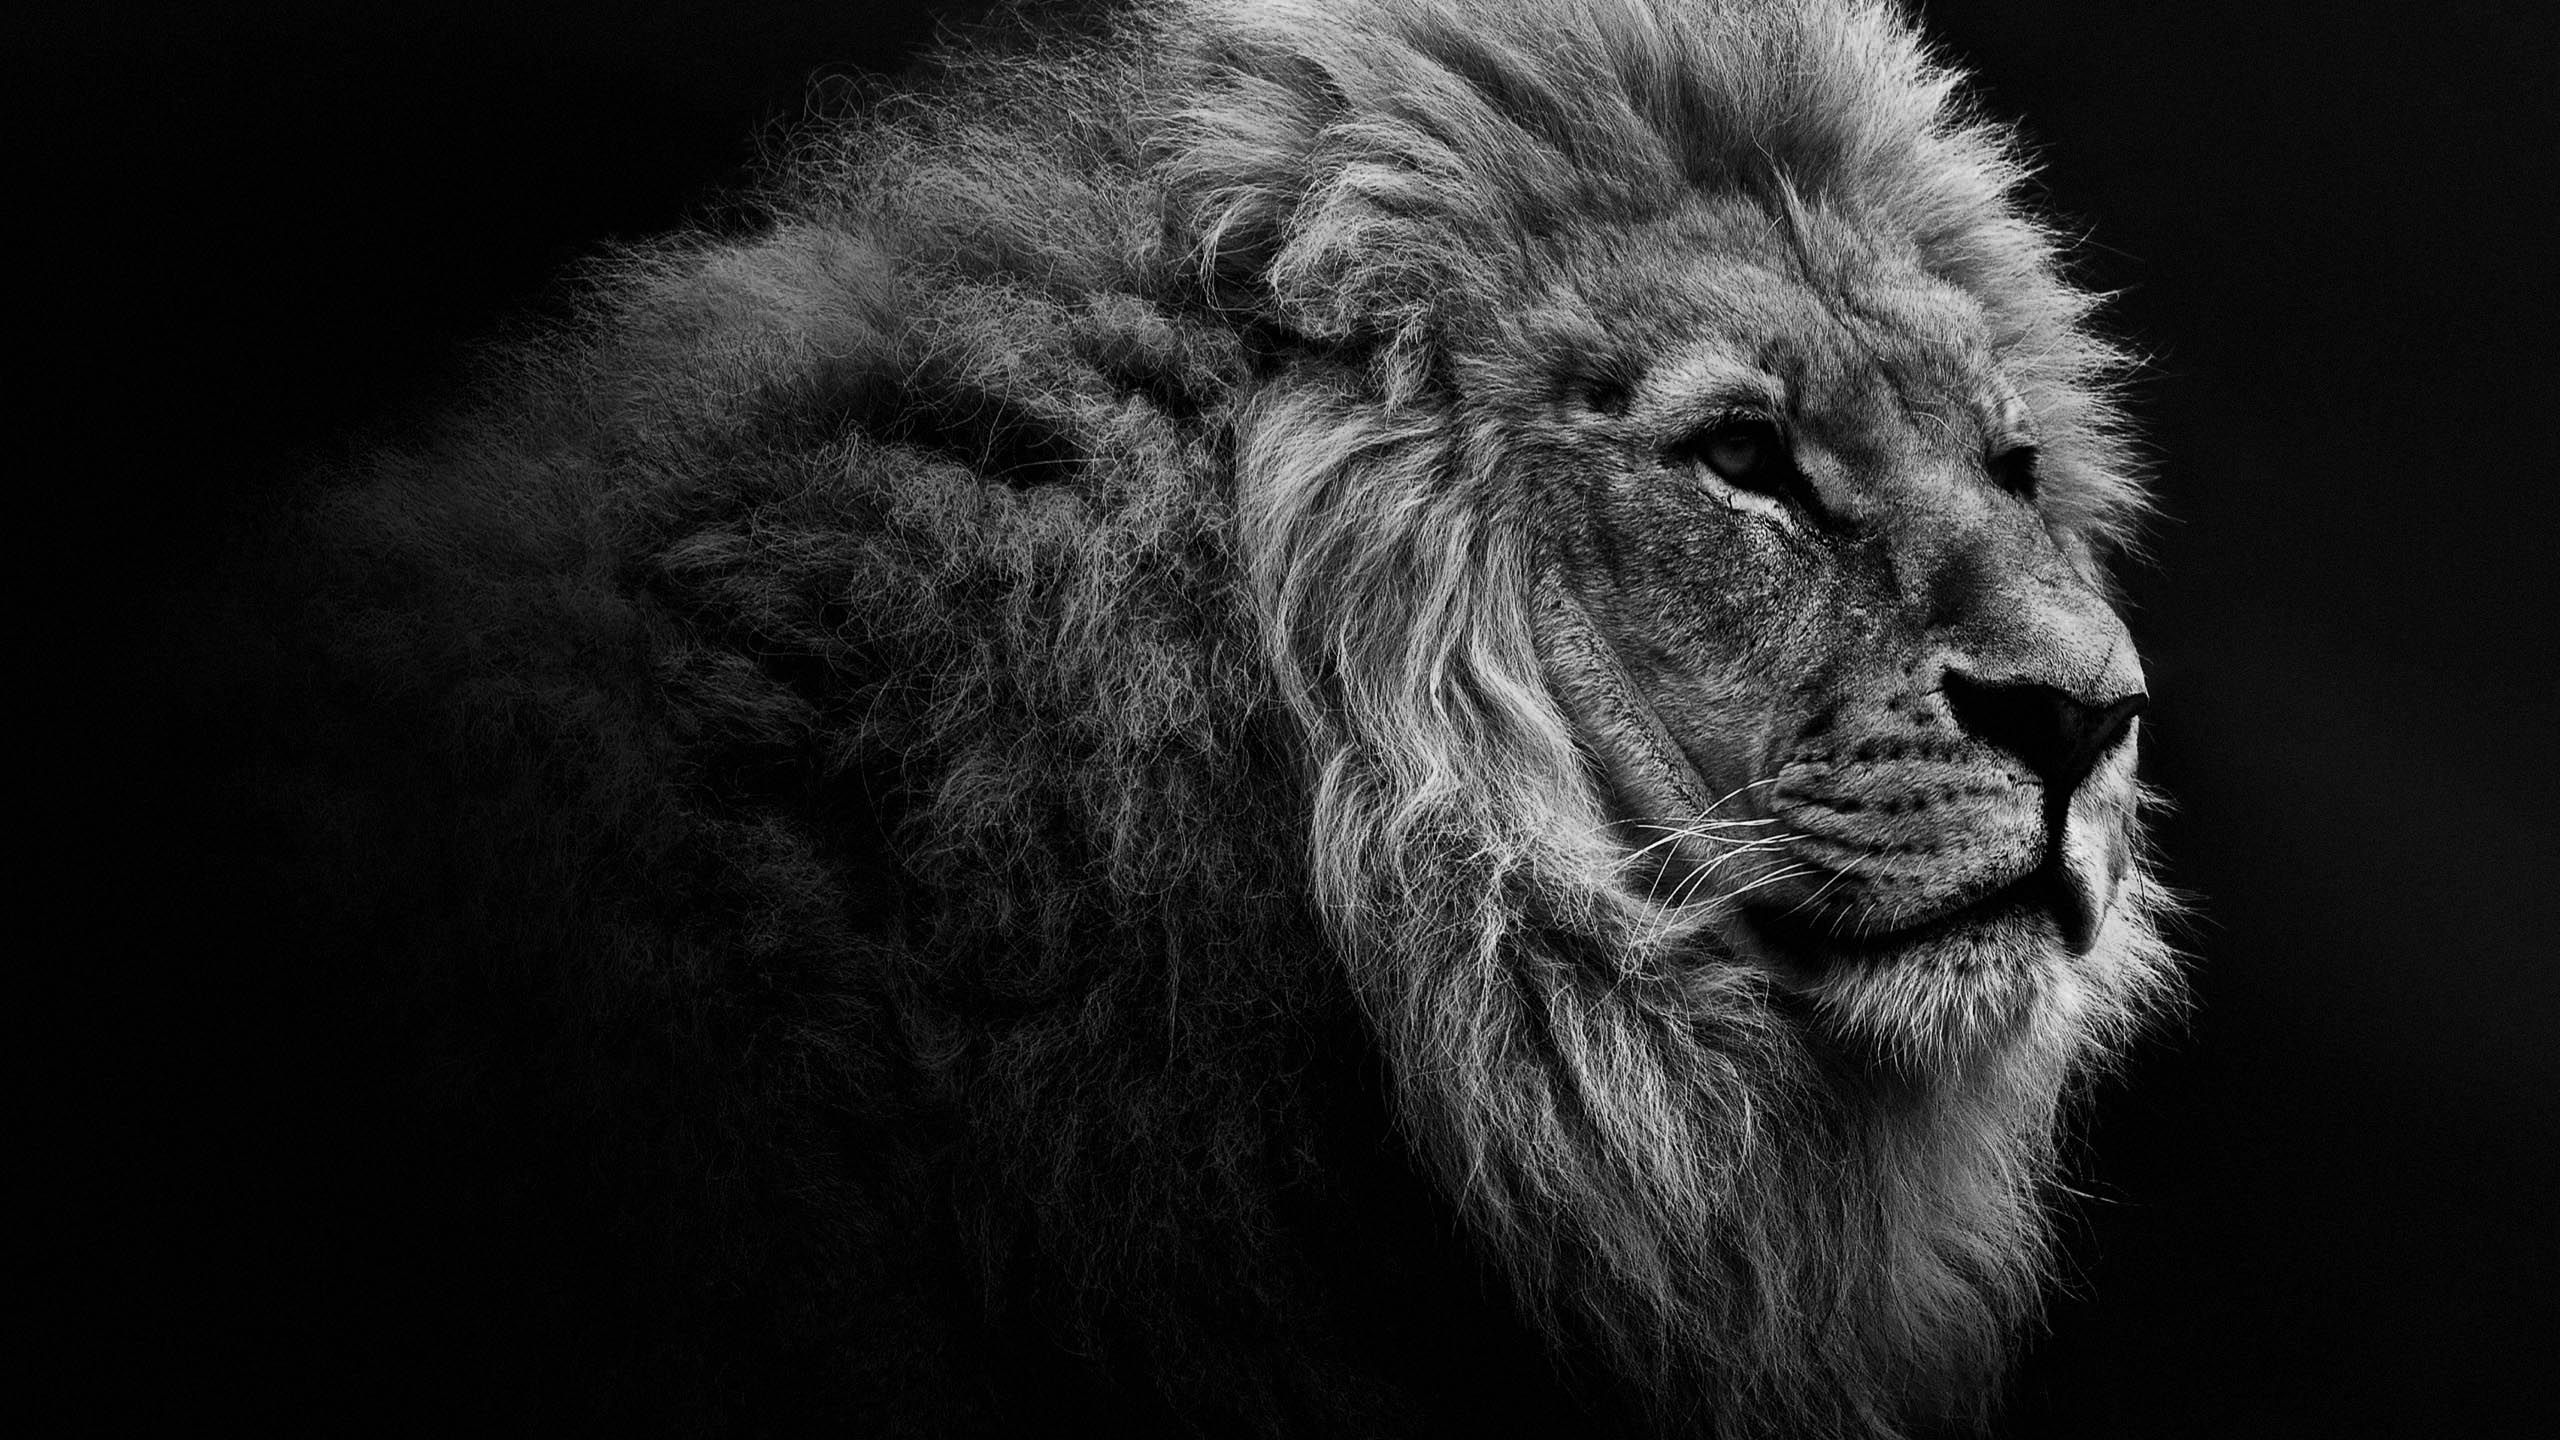 Amazing Lion Portrait Monochrome iPhone Wallpaper